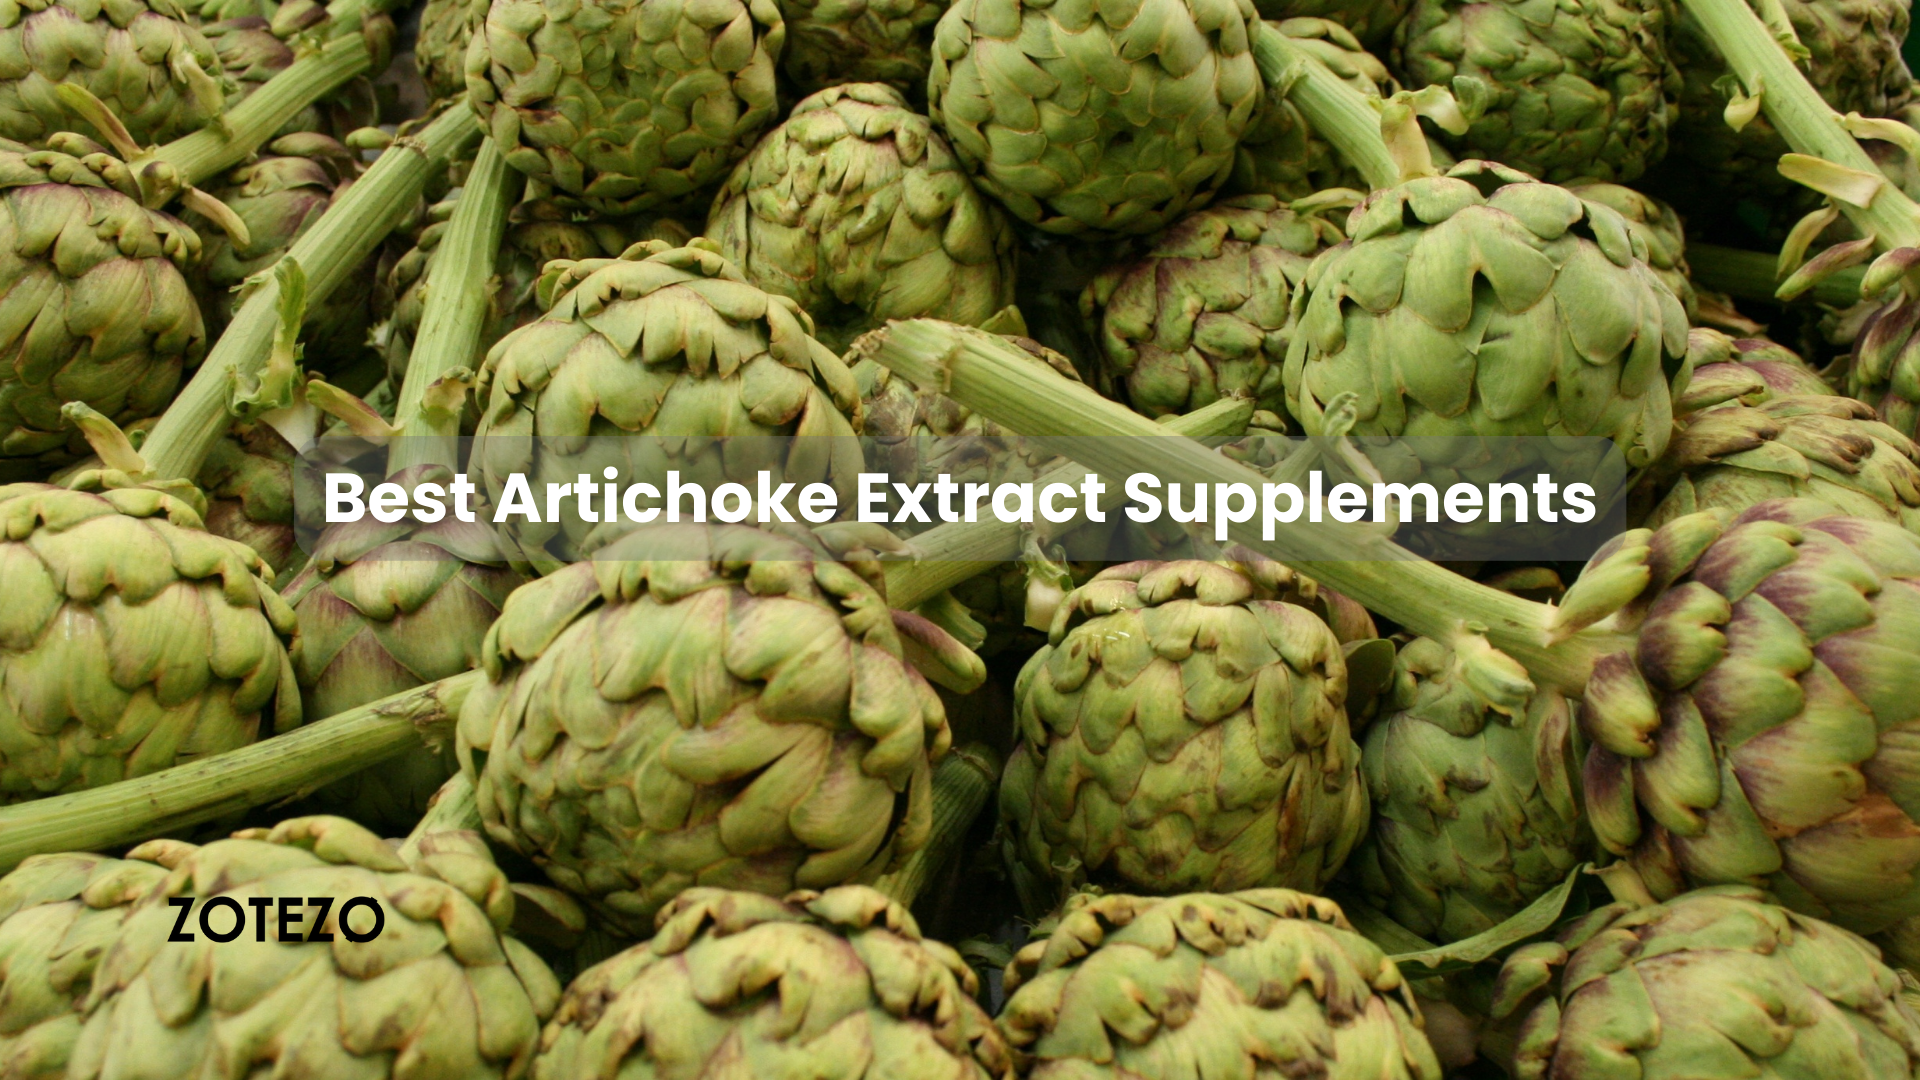 Artichoke Extract Supplements in Australia